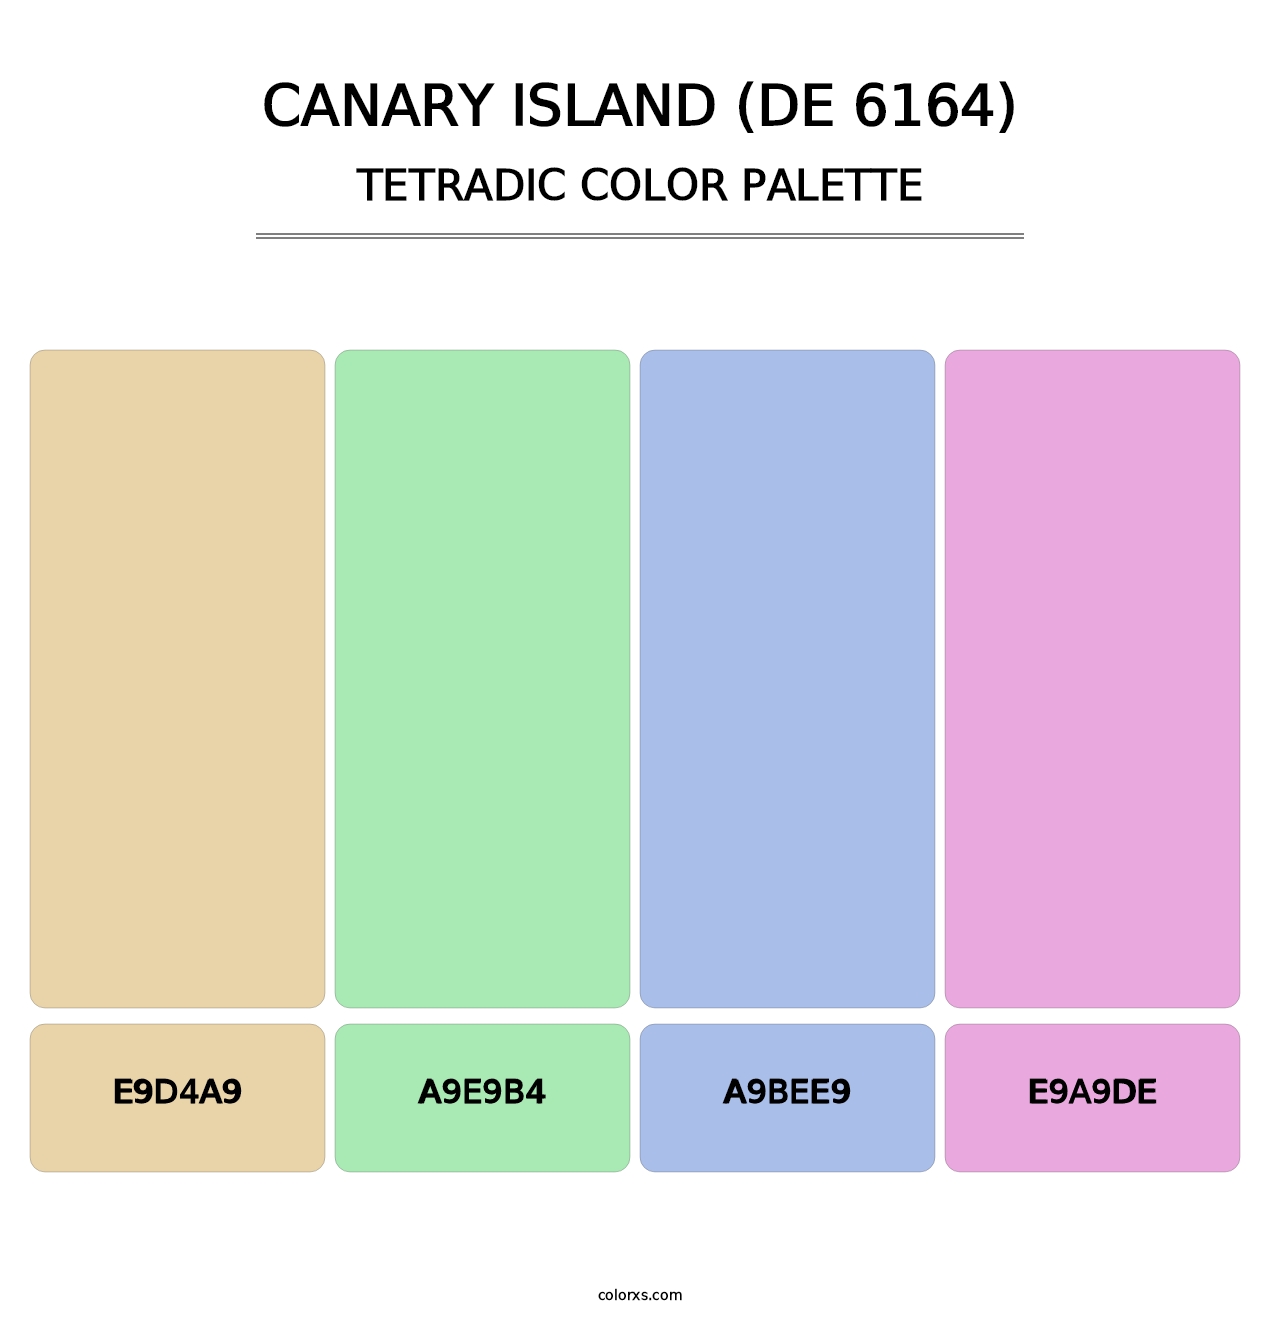 Canary Island (DE 6164) - Tetradic Color Palette